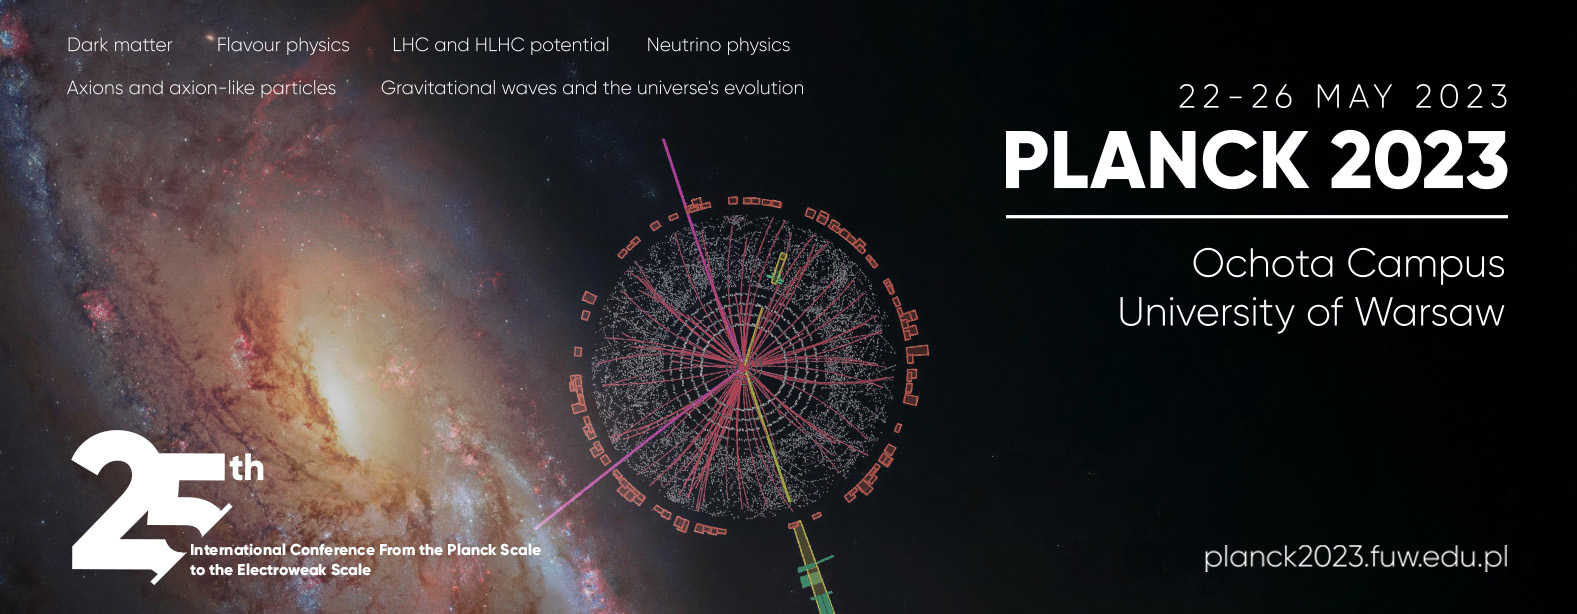 Planck Conference Banner